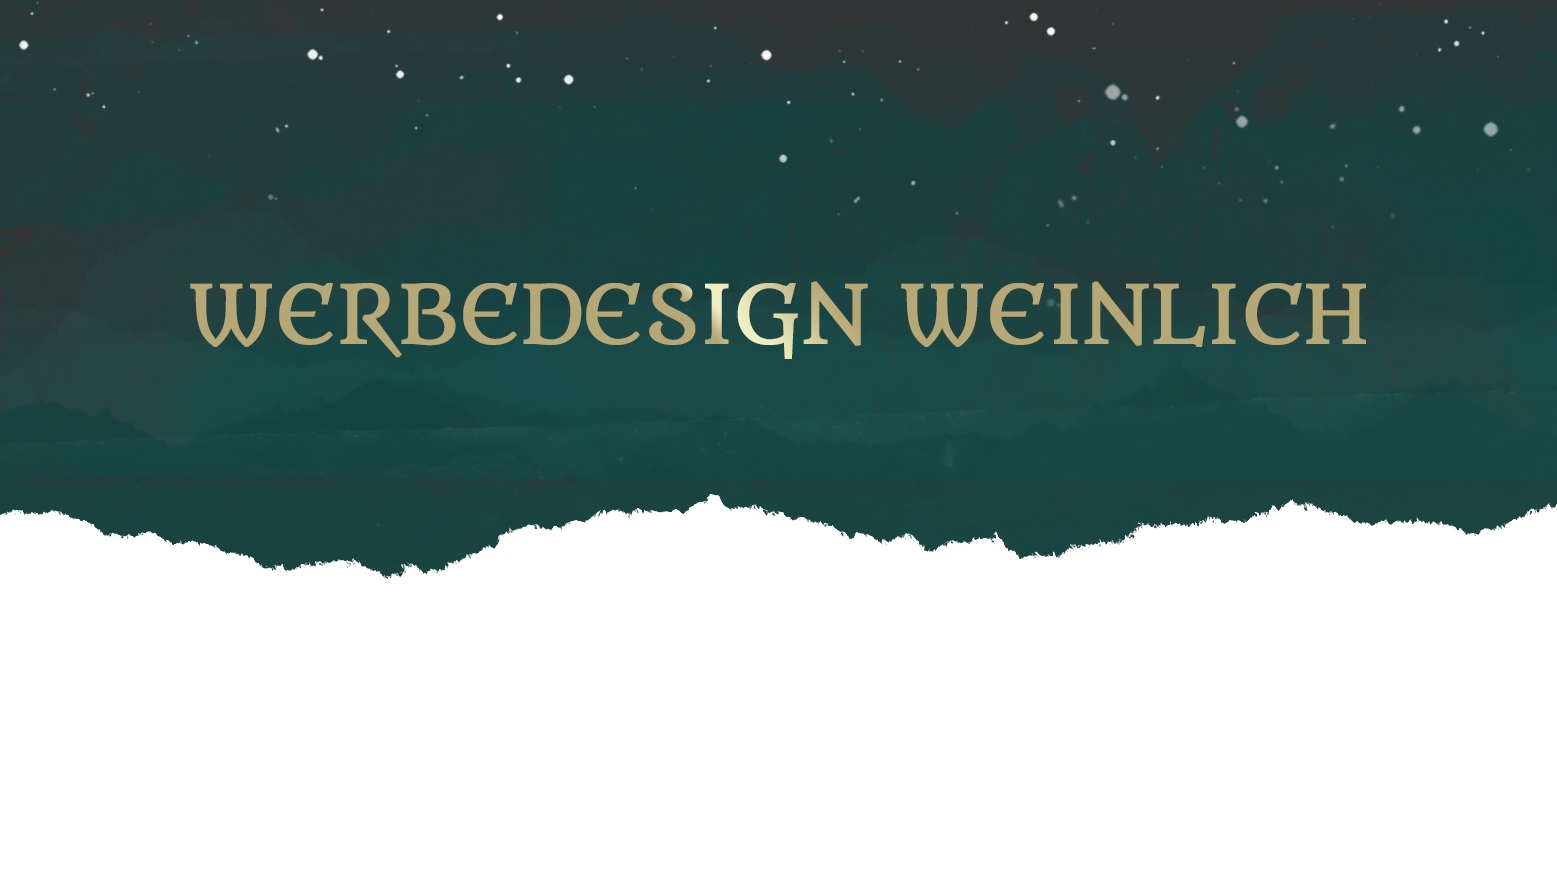 (c) Webdesign-weinlich.de